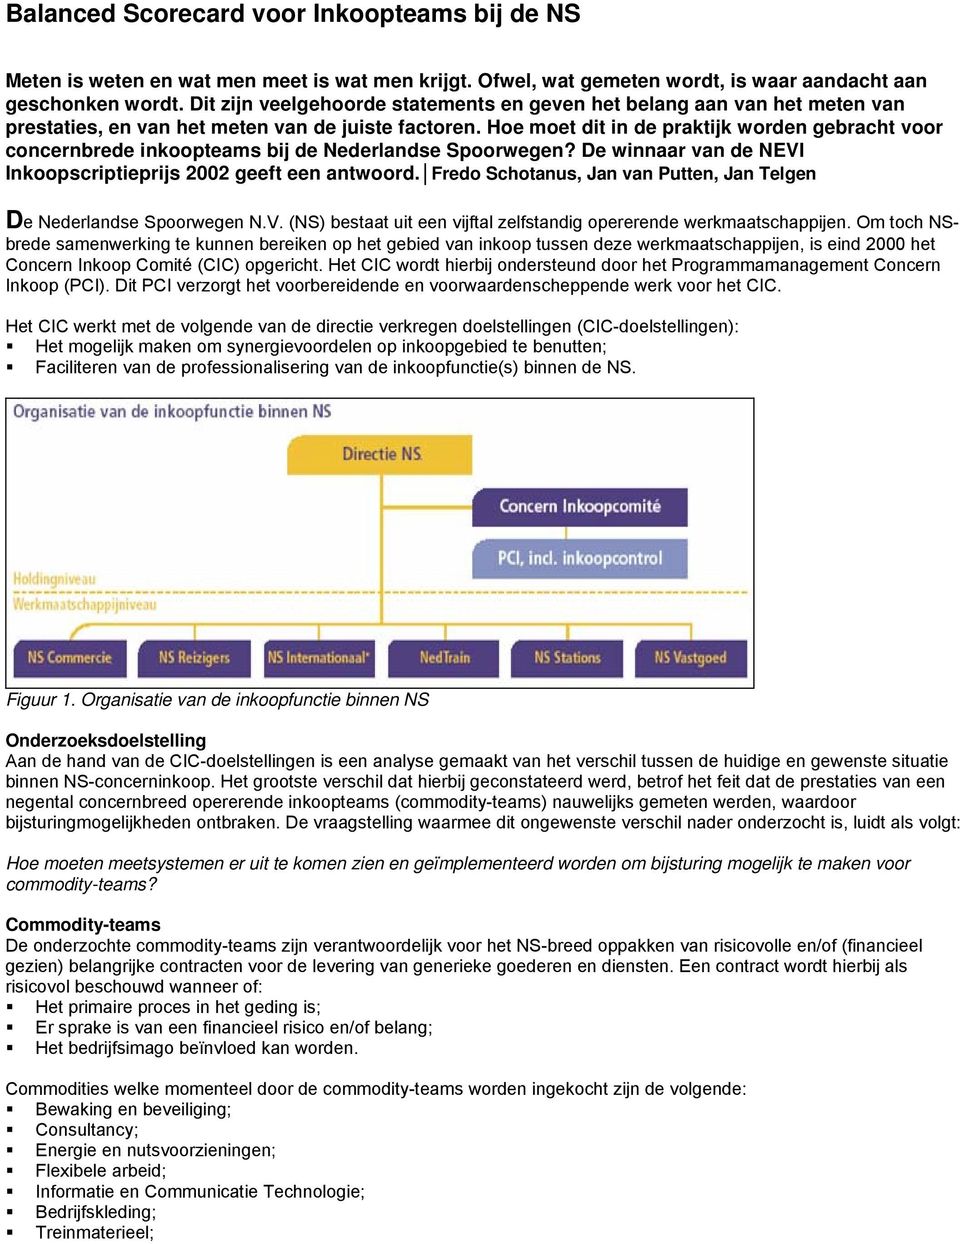 Hoe moet dit in de praktijk worden gebracht voor concernbrede inkoopteams bij de Nederlandse Spoorwegen? De winnaar van de NEVI Inkoopscriptieprijs 2002 geeft een antwoord.